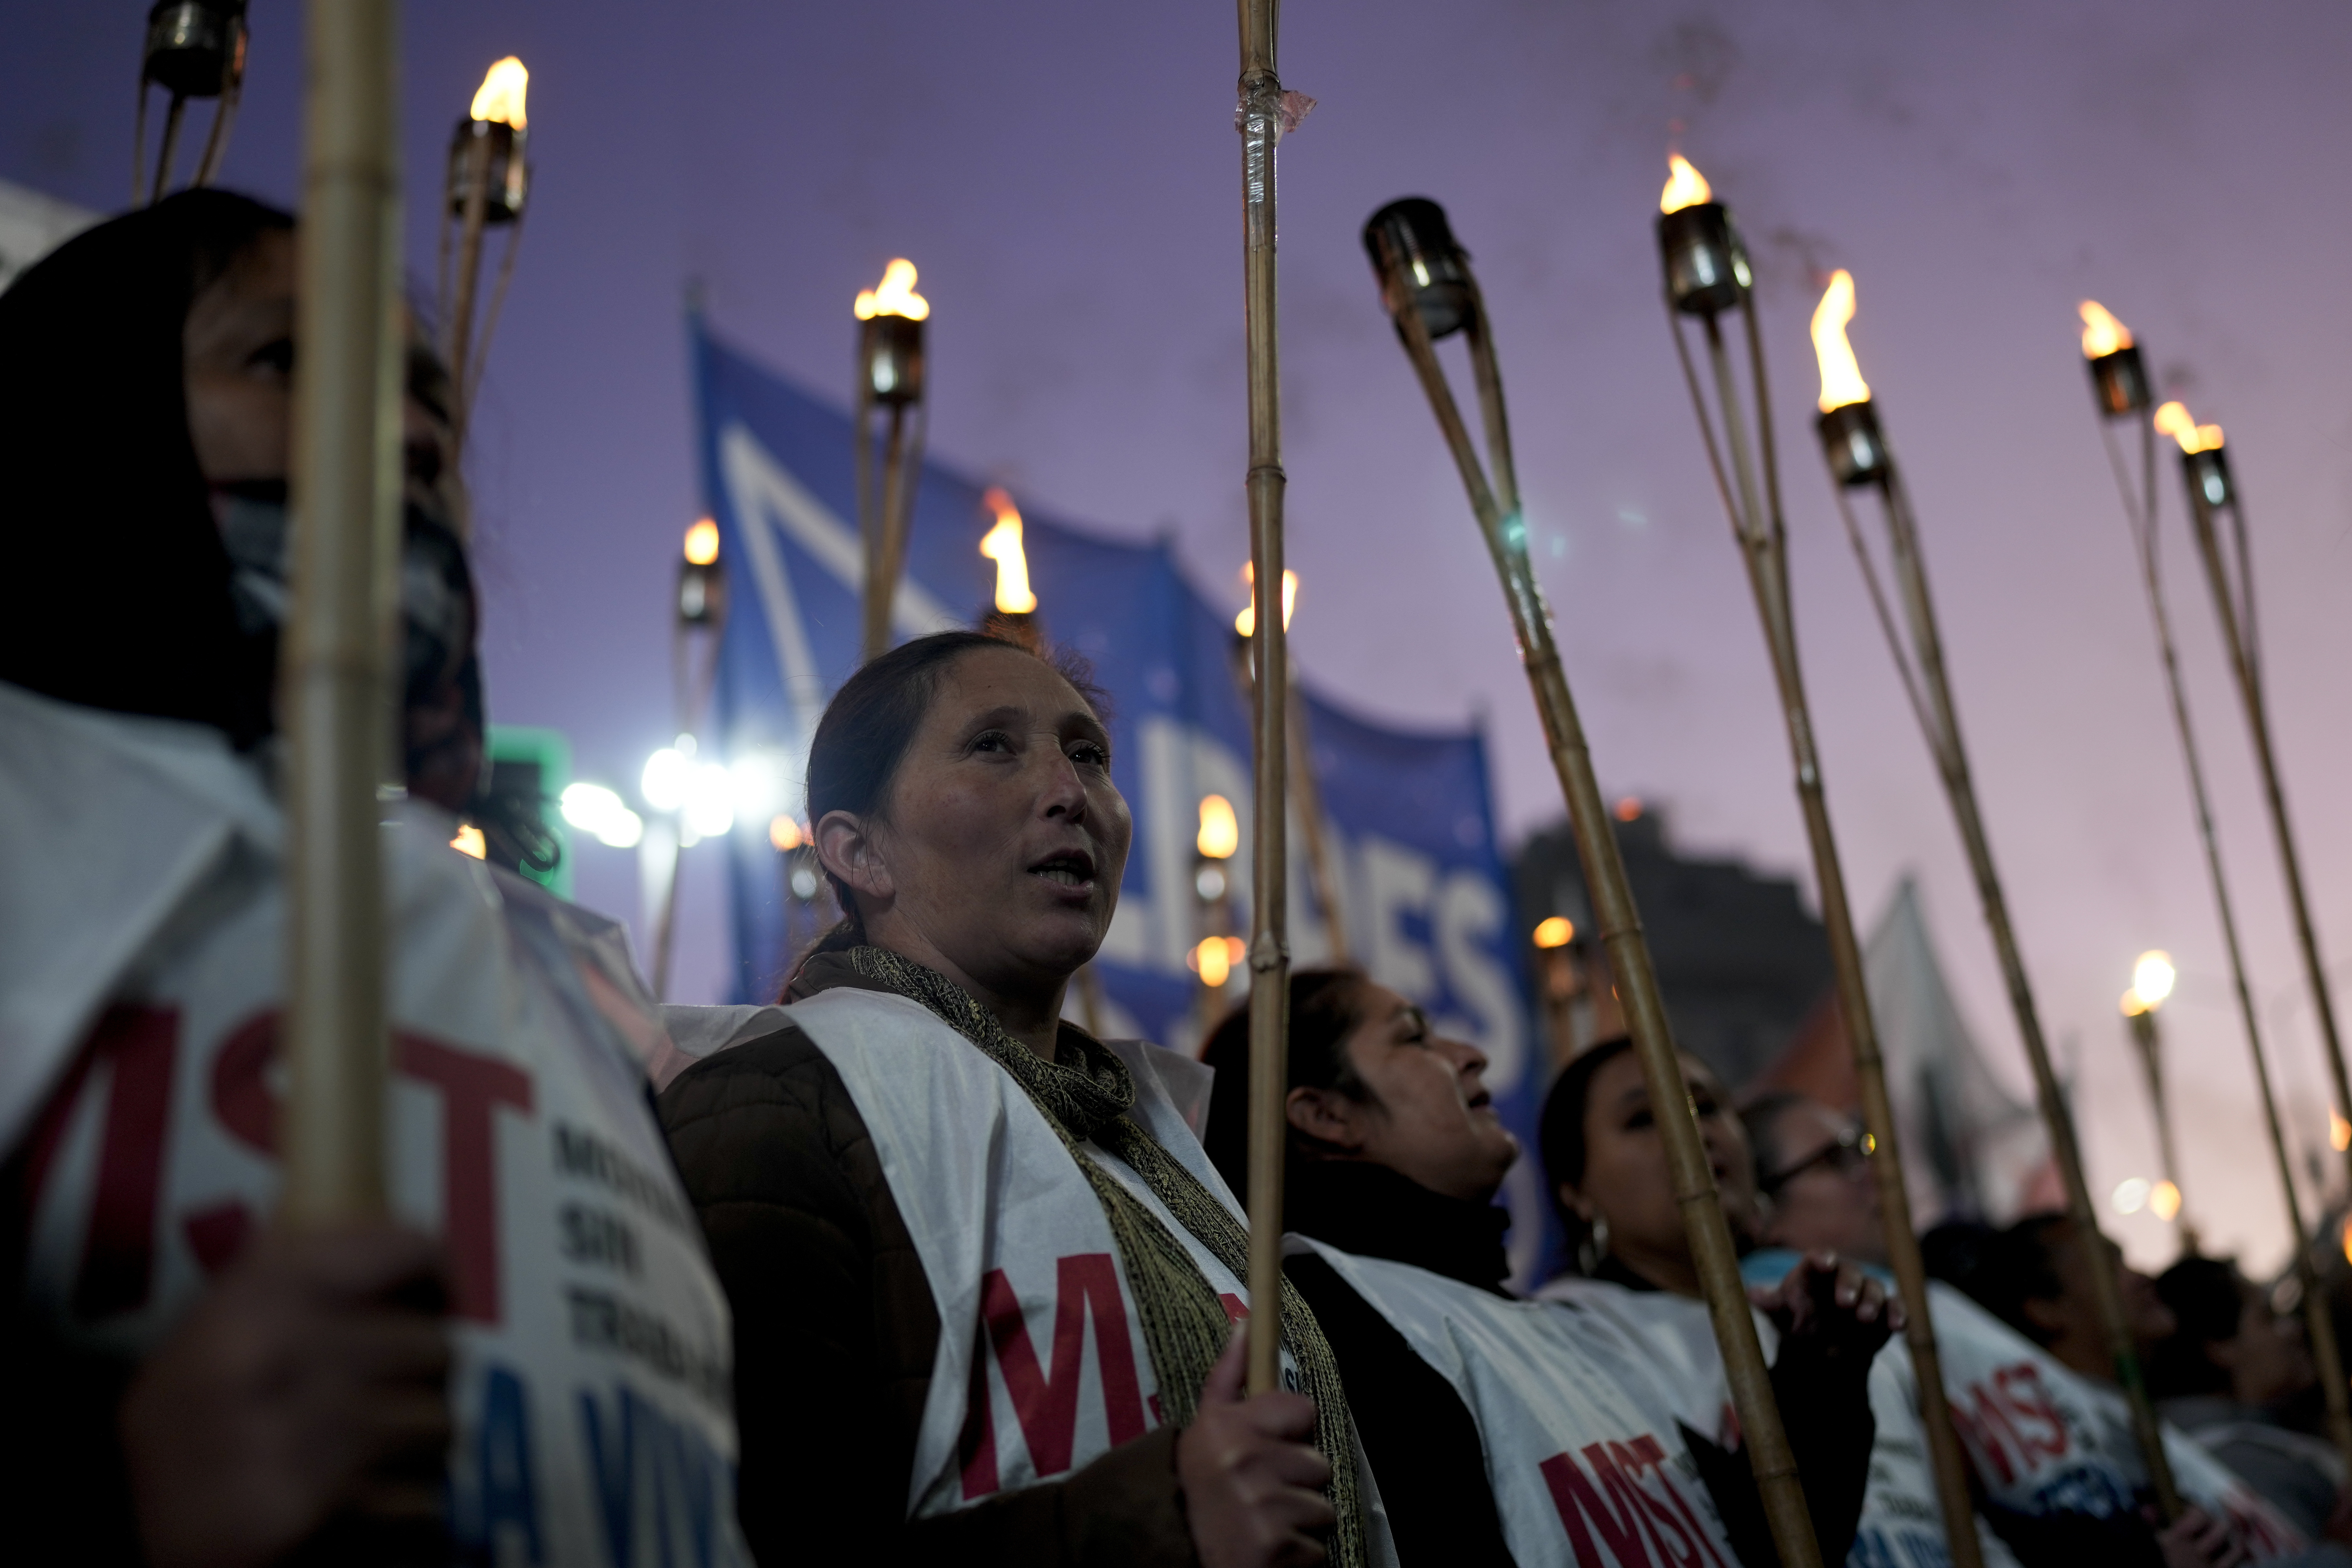 Integrantes de organizaciones sociales marchan con antorchas en protesta contra las políticas gubernamentales y en reclamo de salarios más altos para enfrentar la inflación, en Buenos Aires, Argentina, el miércoles 19 de abril de 2023. (AP Foto/Natacha Pisarenko)